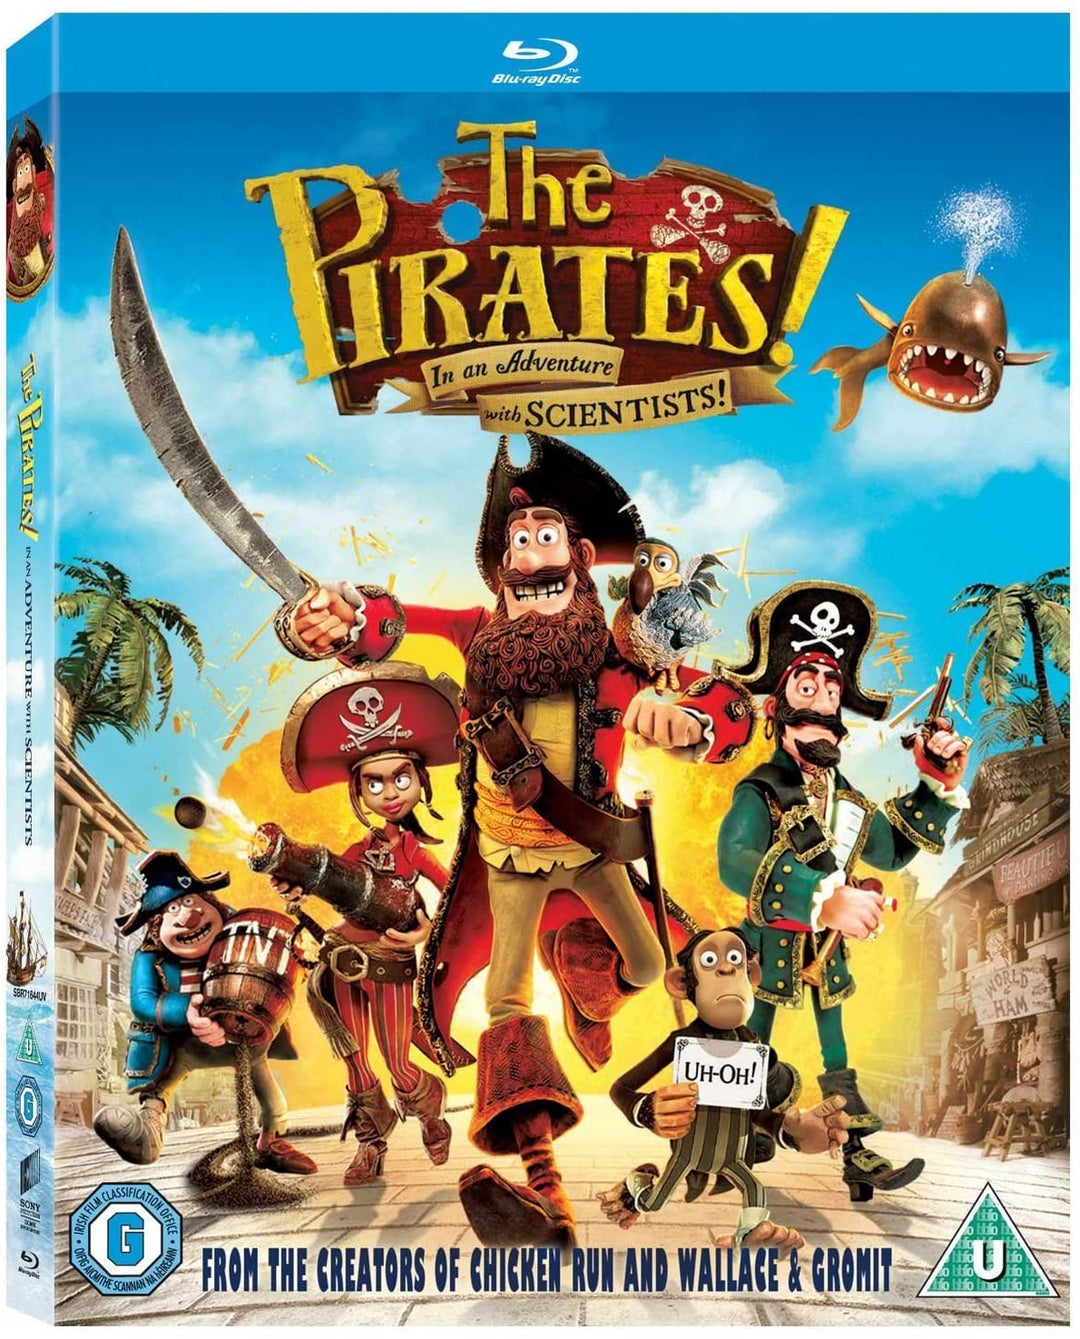 Die Piraten! In einem Abenteuer mit Wissenschaftlern [Blu-ray] [Region Free]